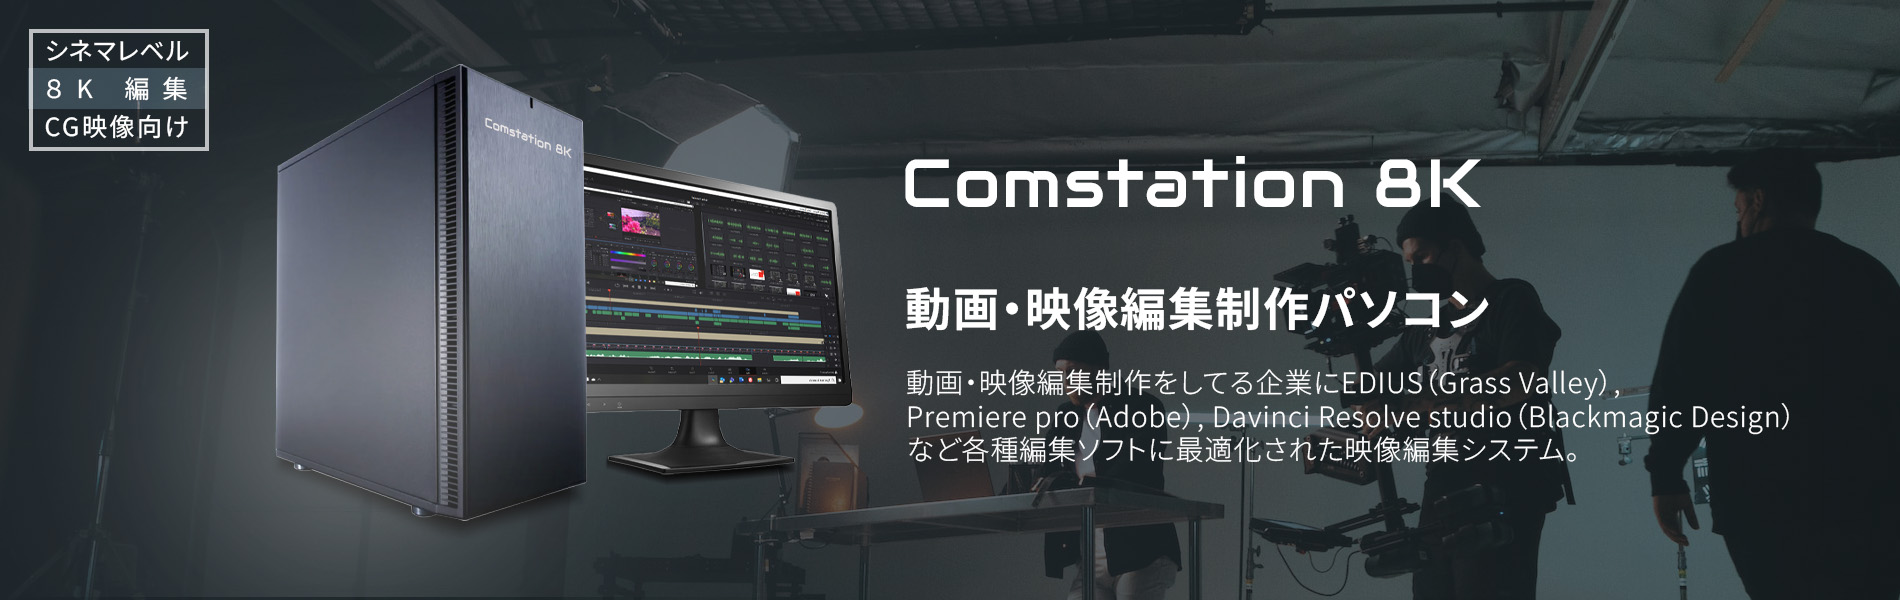 comstation-8k